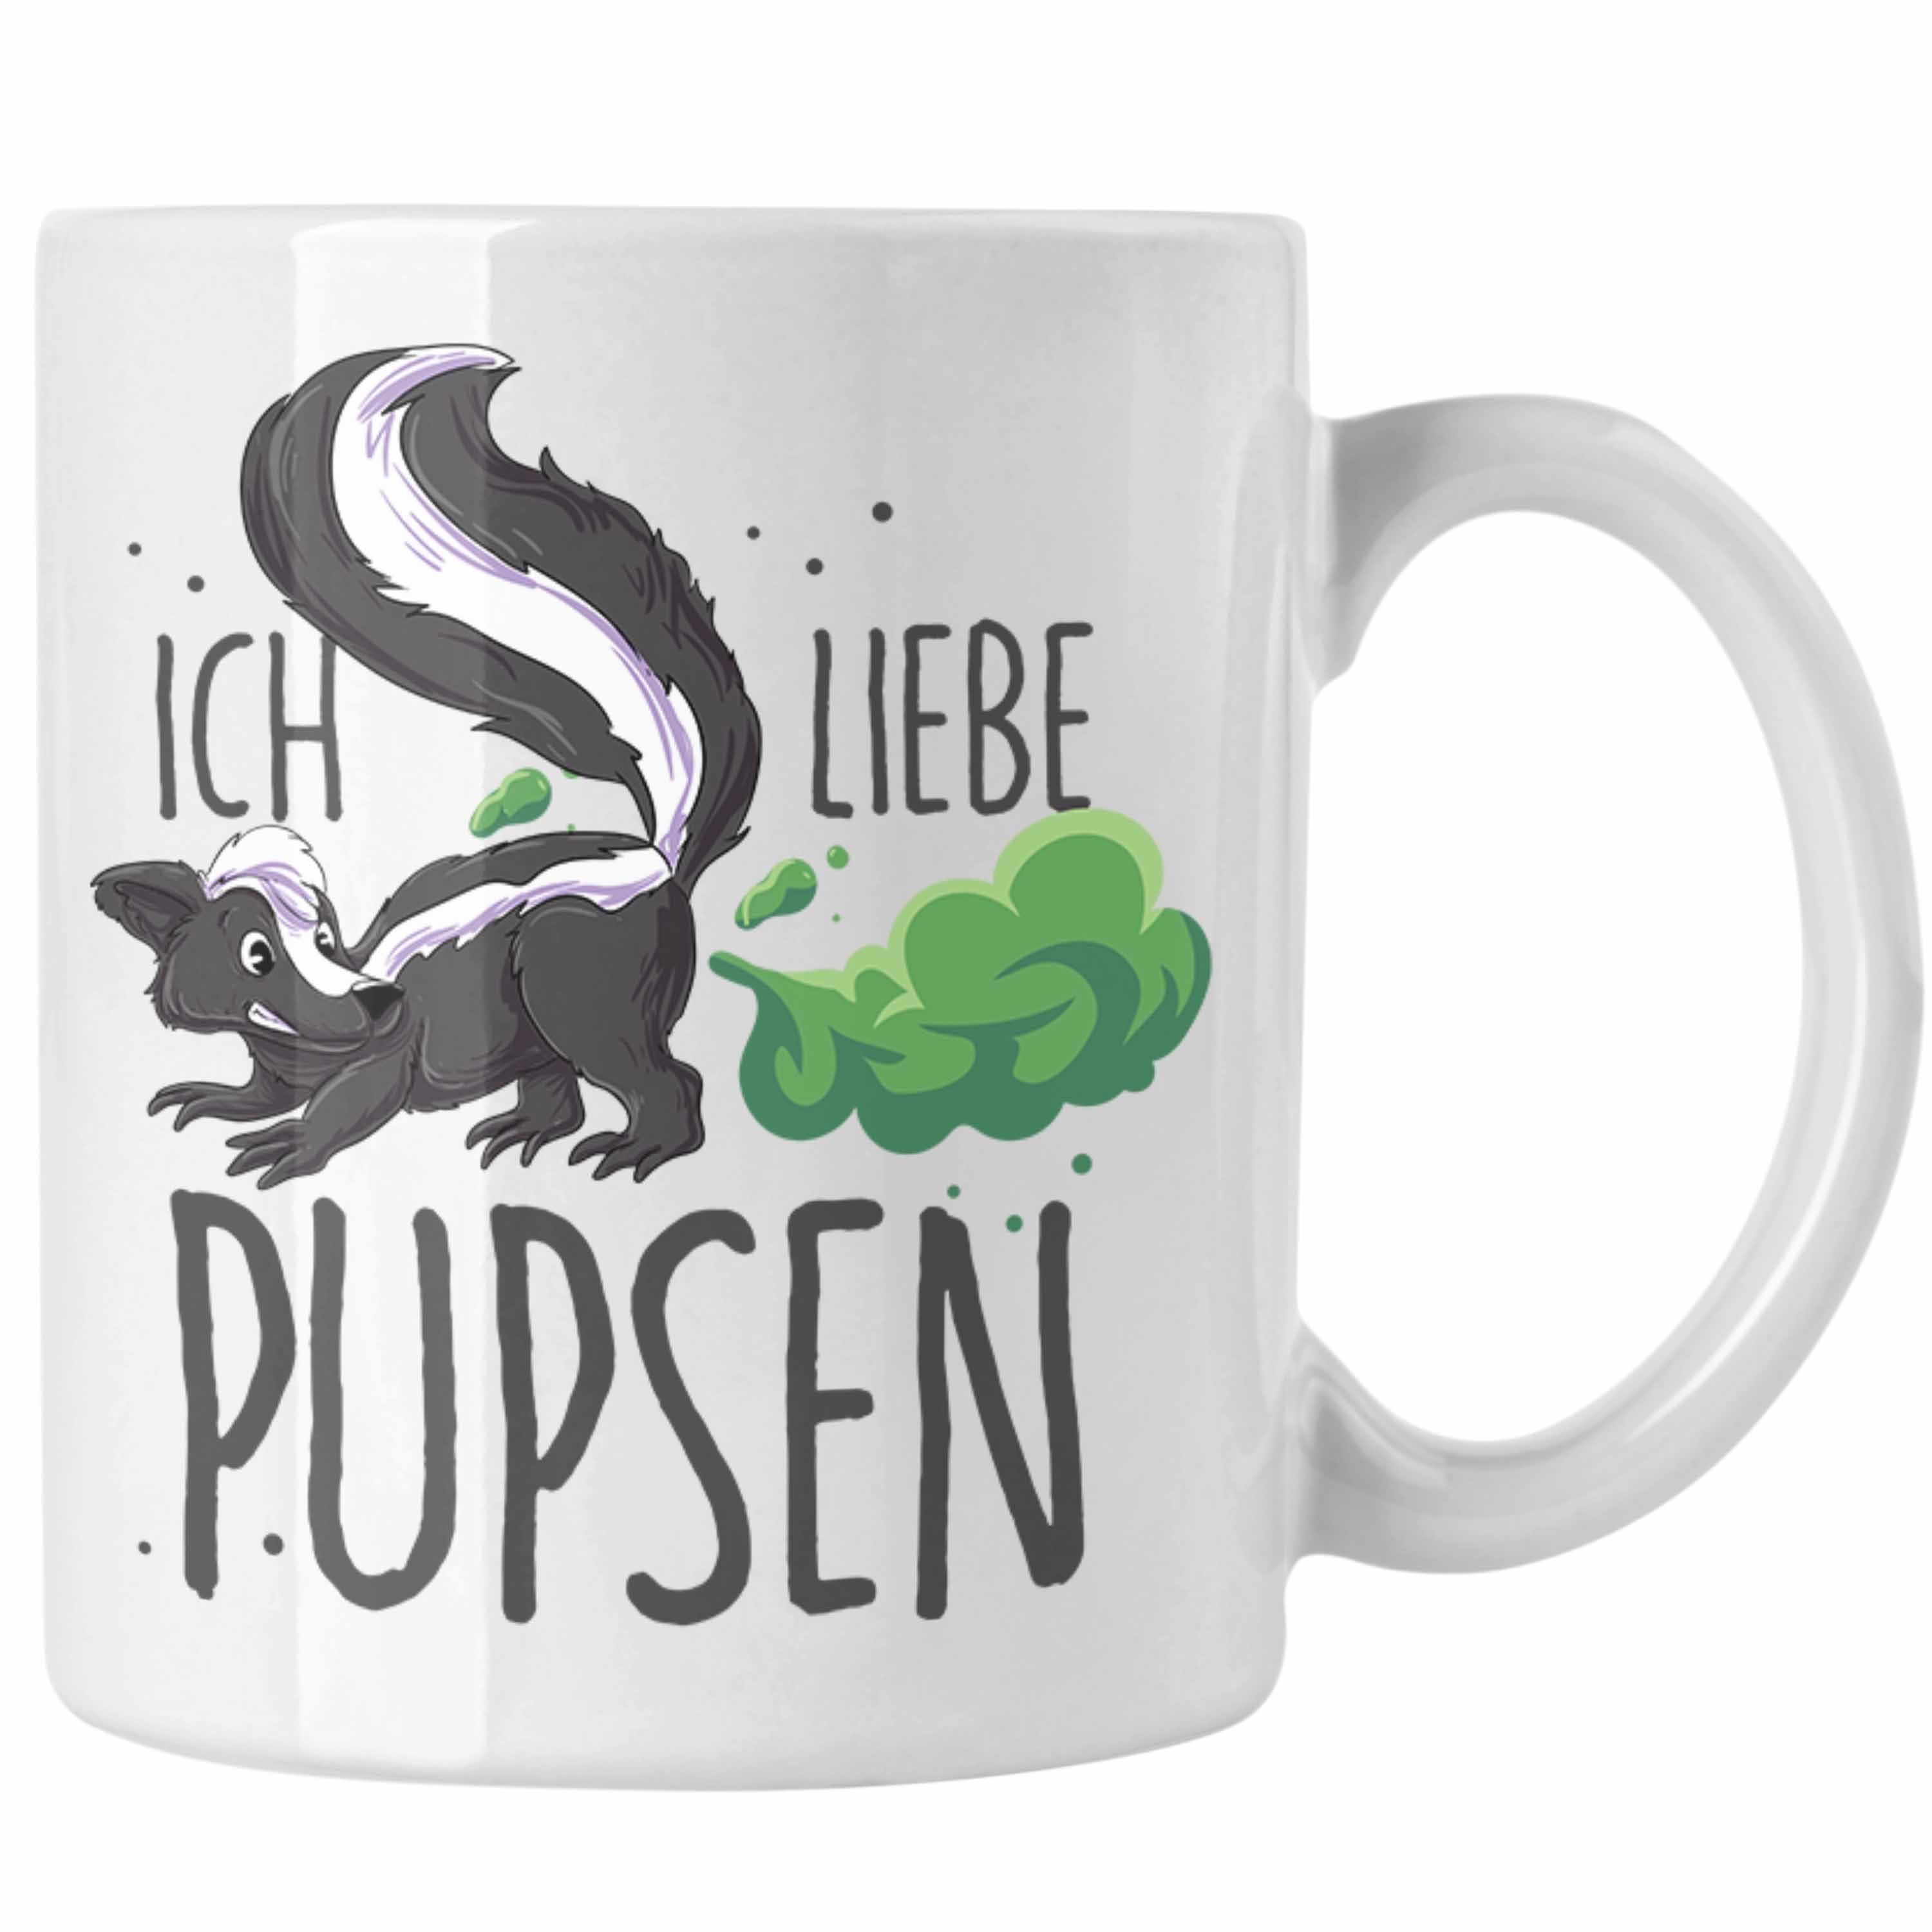 Trendation Tasse Lustige Tasse "Ich liebe Pupsen" mit Stinktier-Motiv Geschenkidee Gebu Weiss